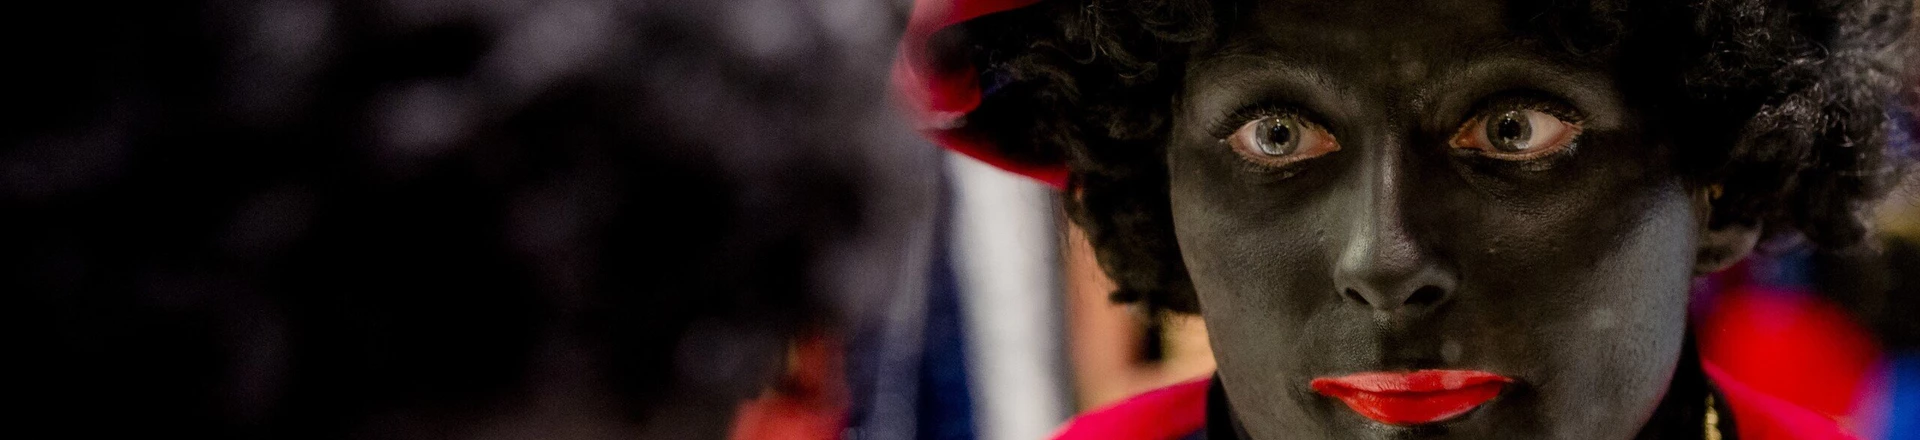 Holandesa pinta o rosto de preto para se tornar uma "Zwarte Piet" em outubro de 2013.